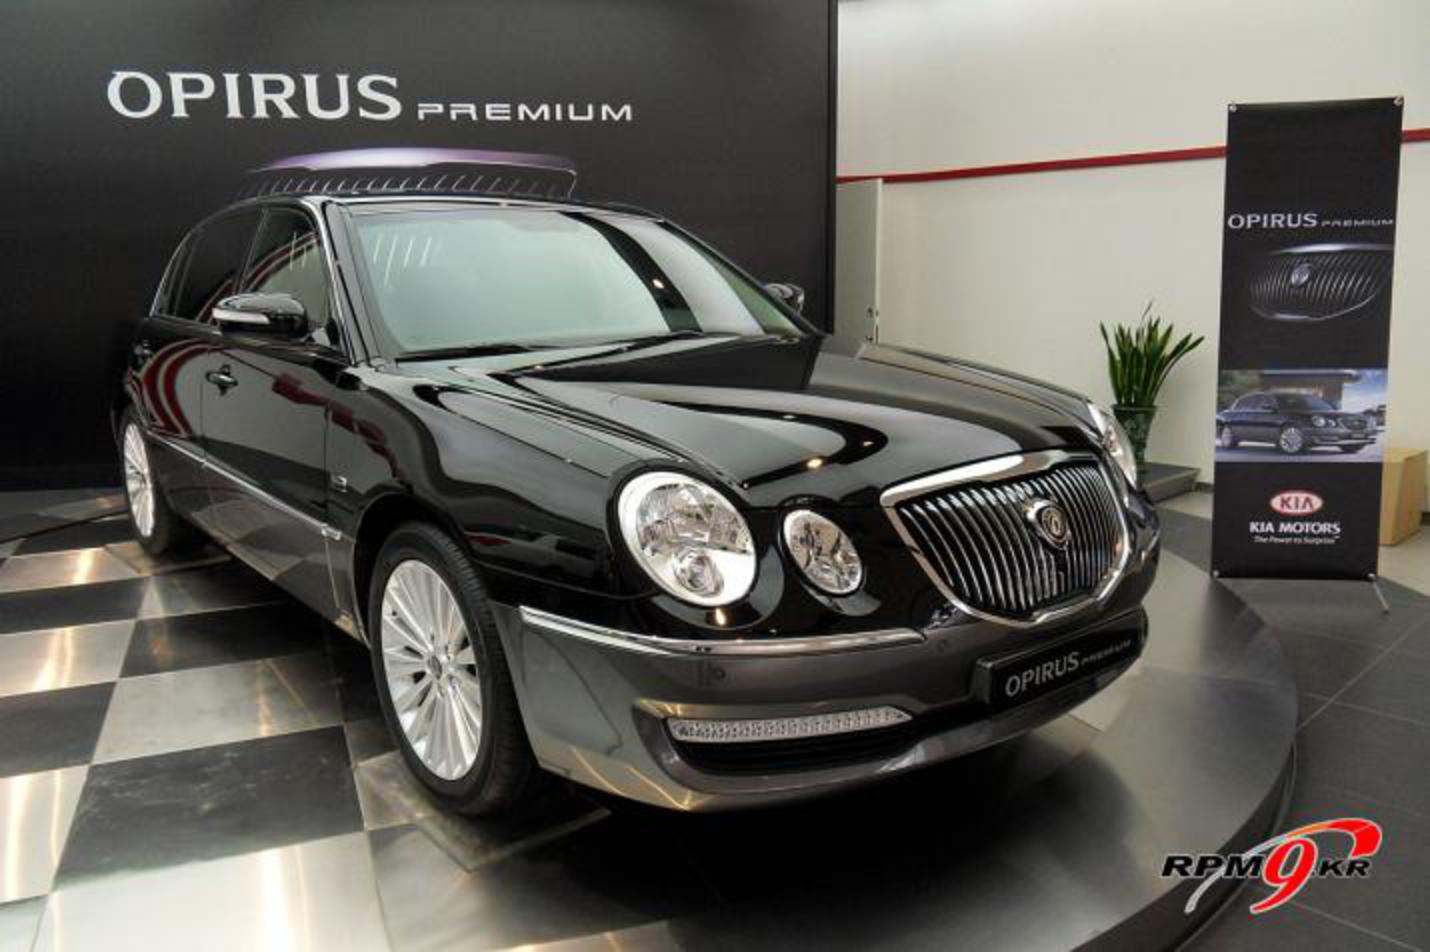 KIA Opirus (Amanti) Premium 2010 img_3 / C'est votre monde automobile...